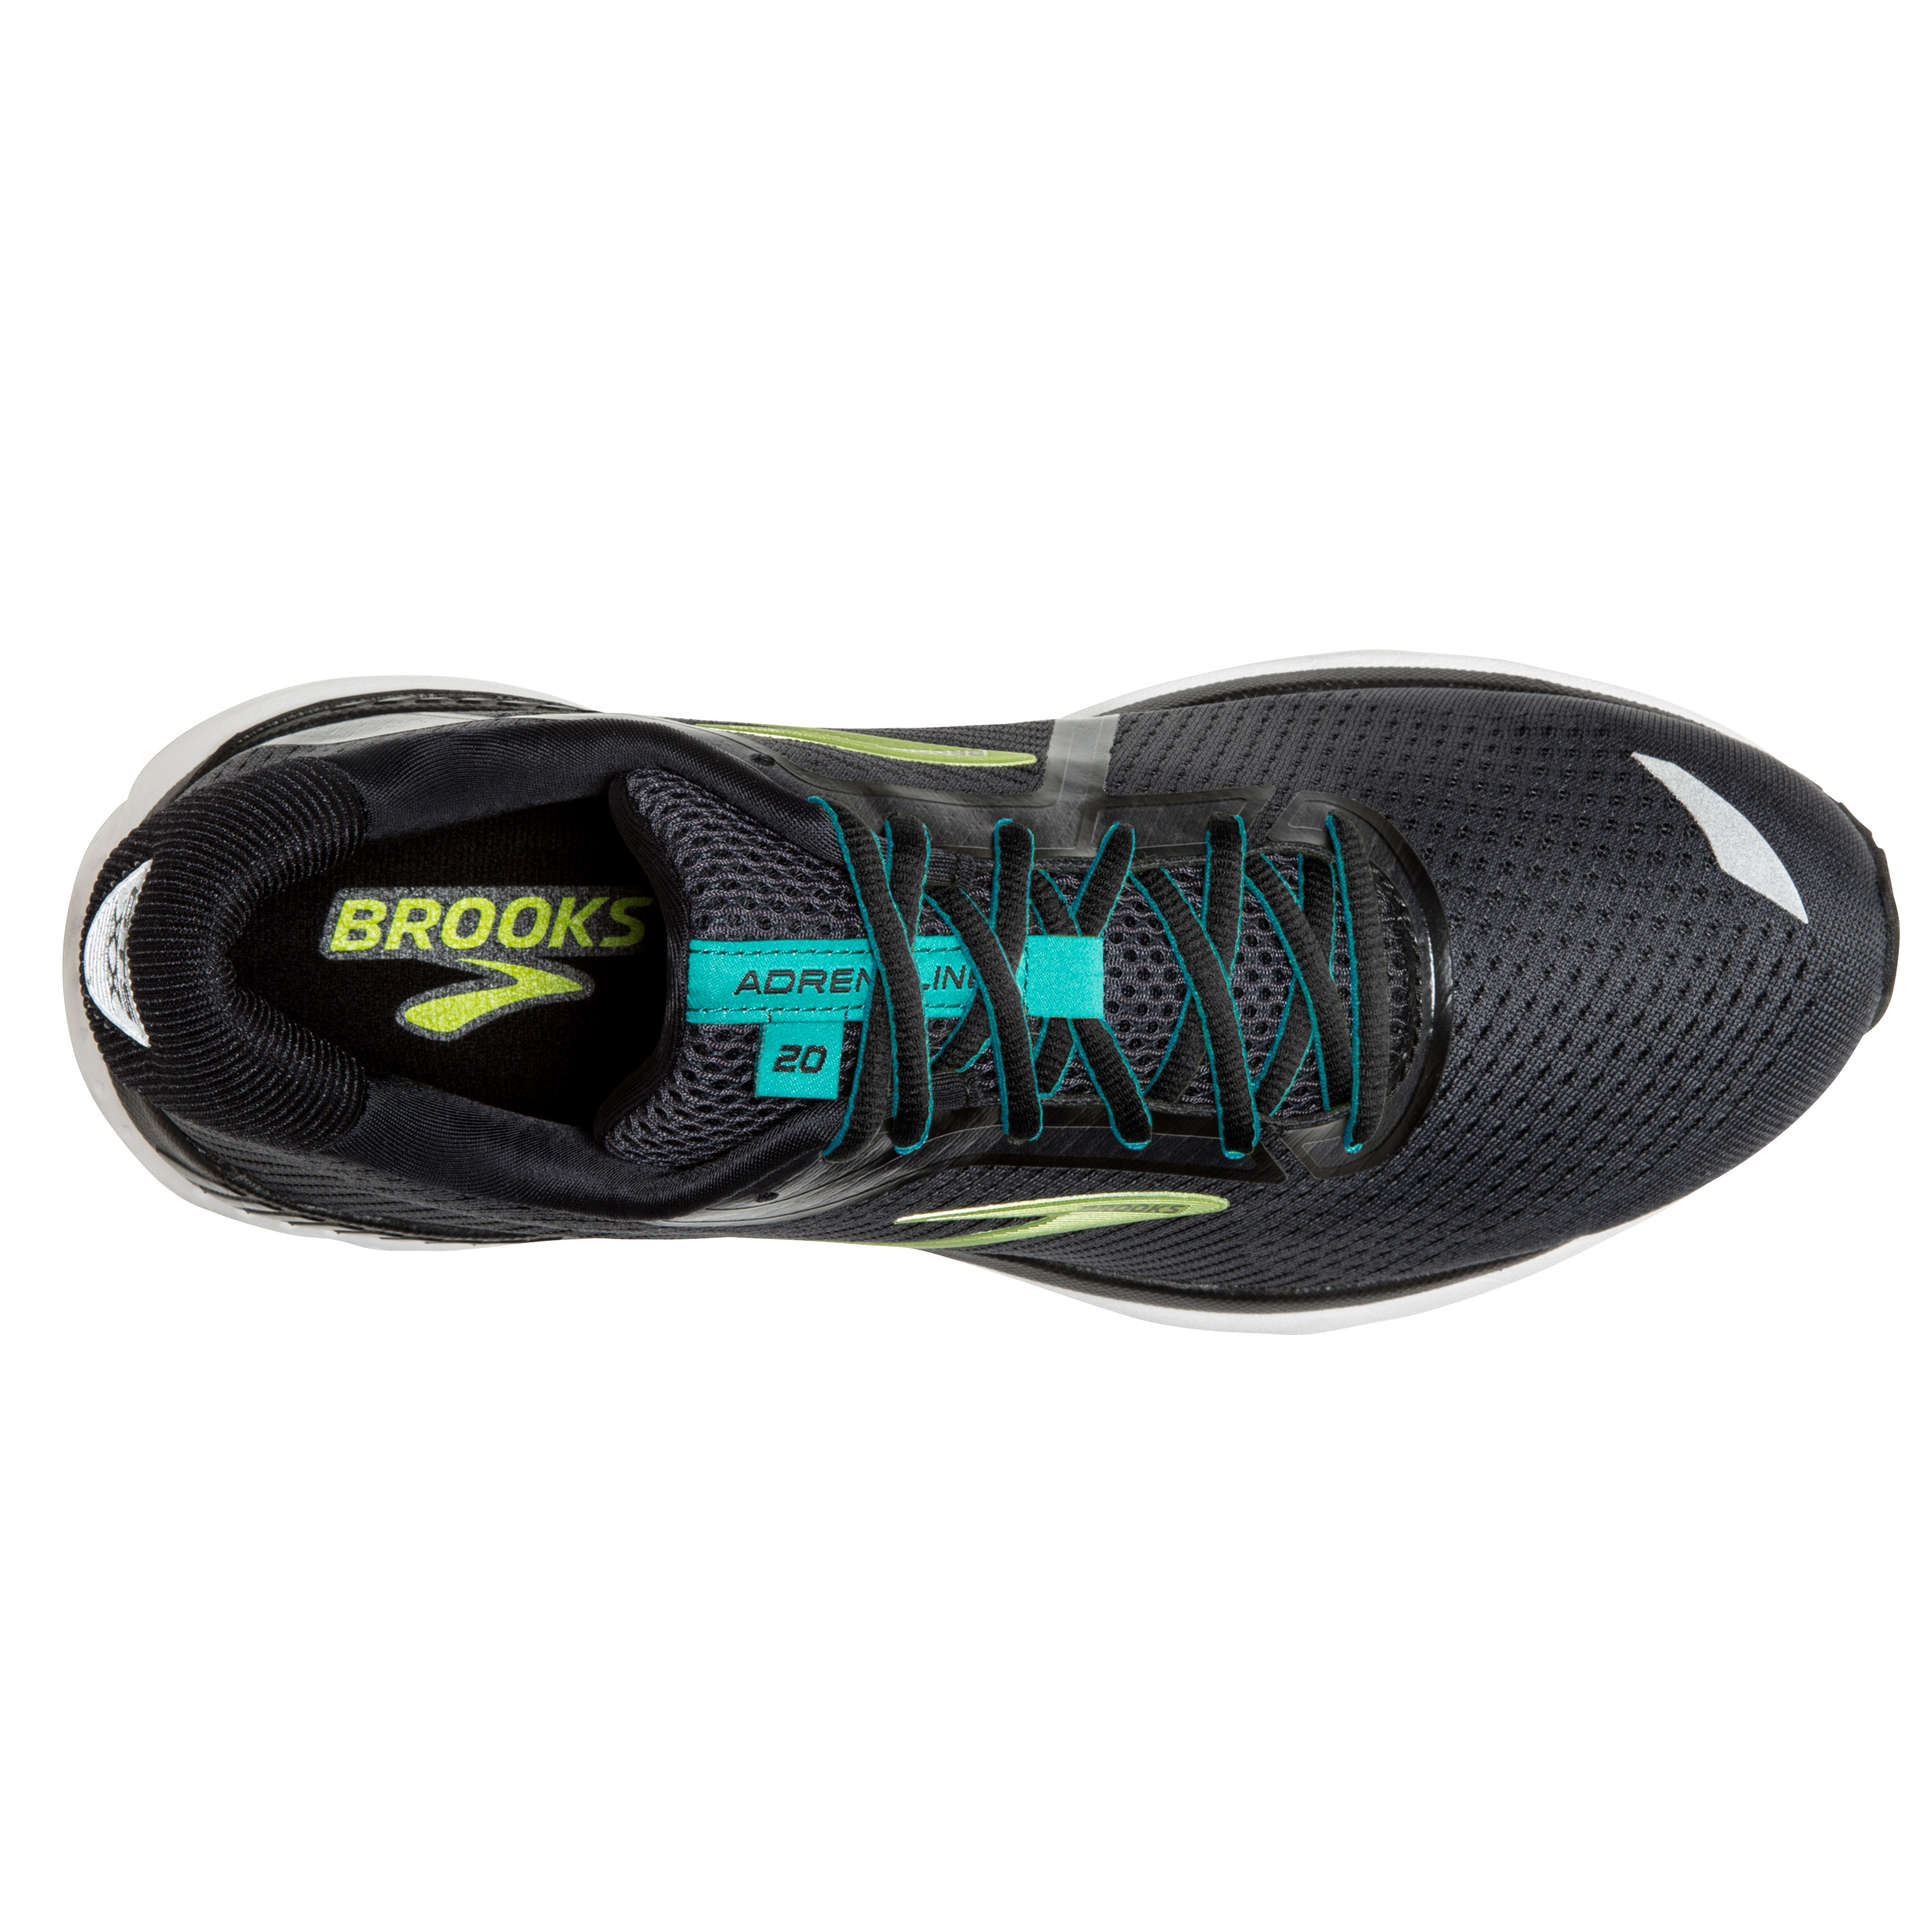 Brooks Adrenaline GTS 20 Hardloopschoenen Zwart/Wit Heren